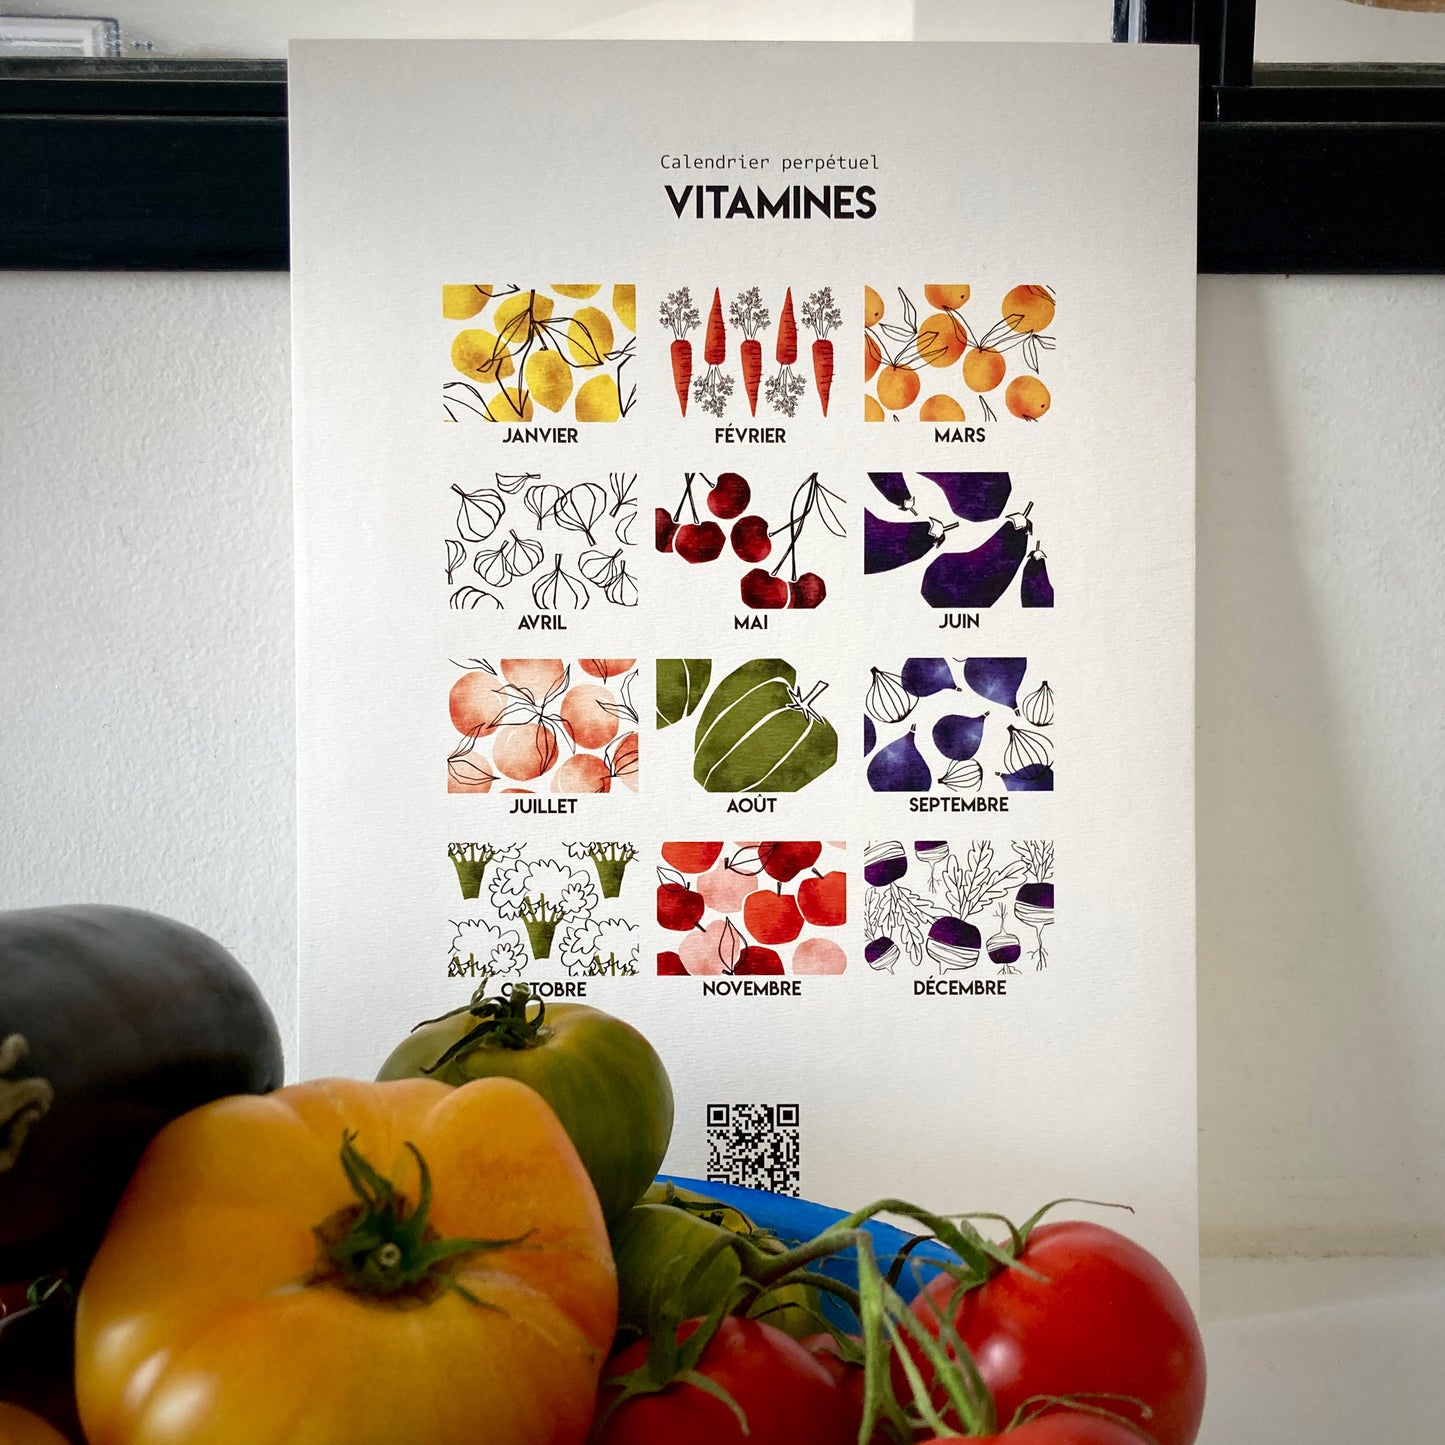 Calendrier perpétuel VITAMINE - fruits et légumes de saison